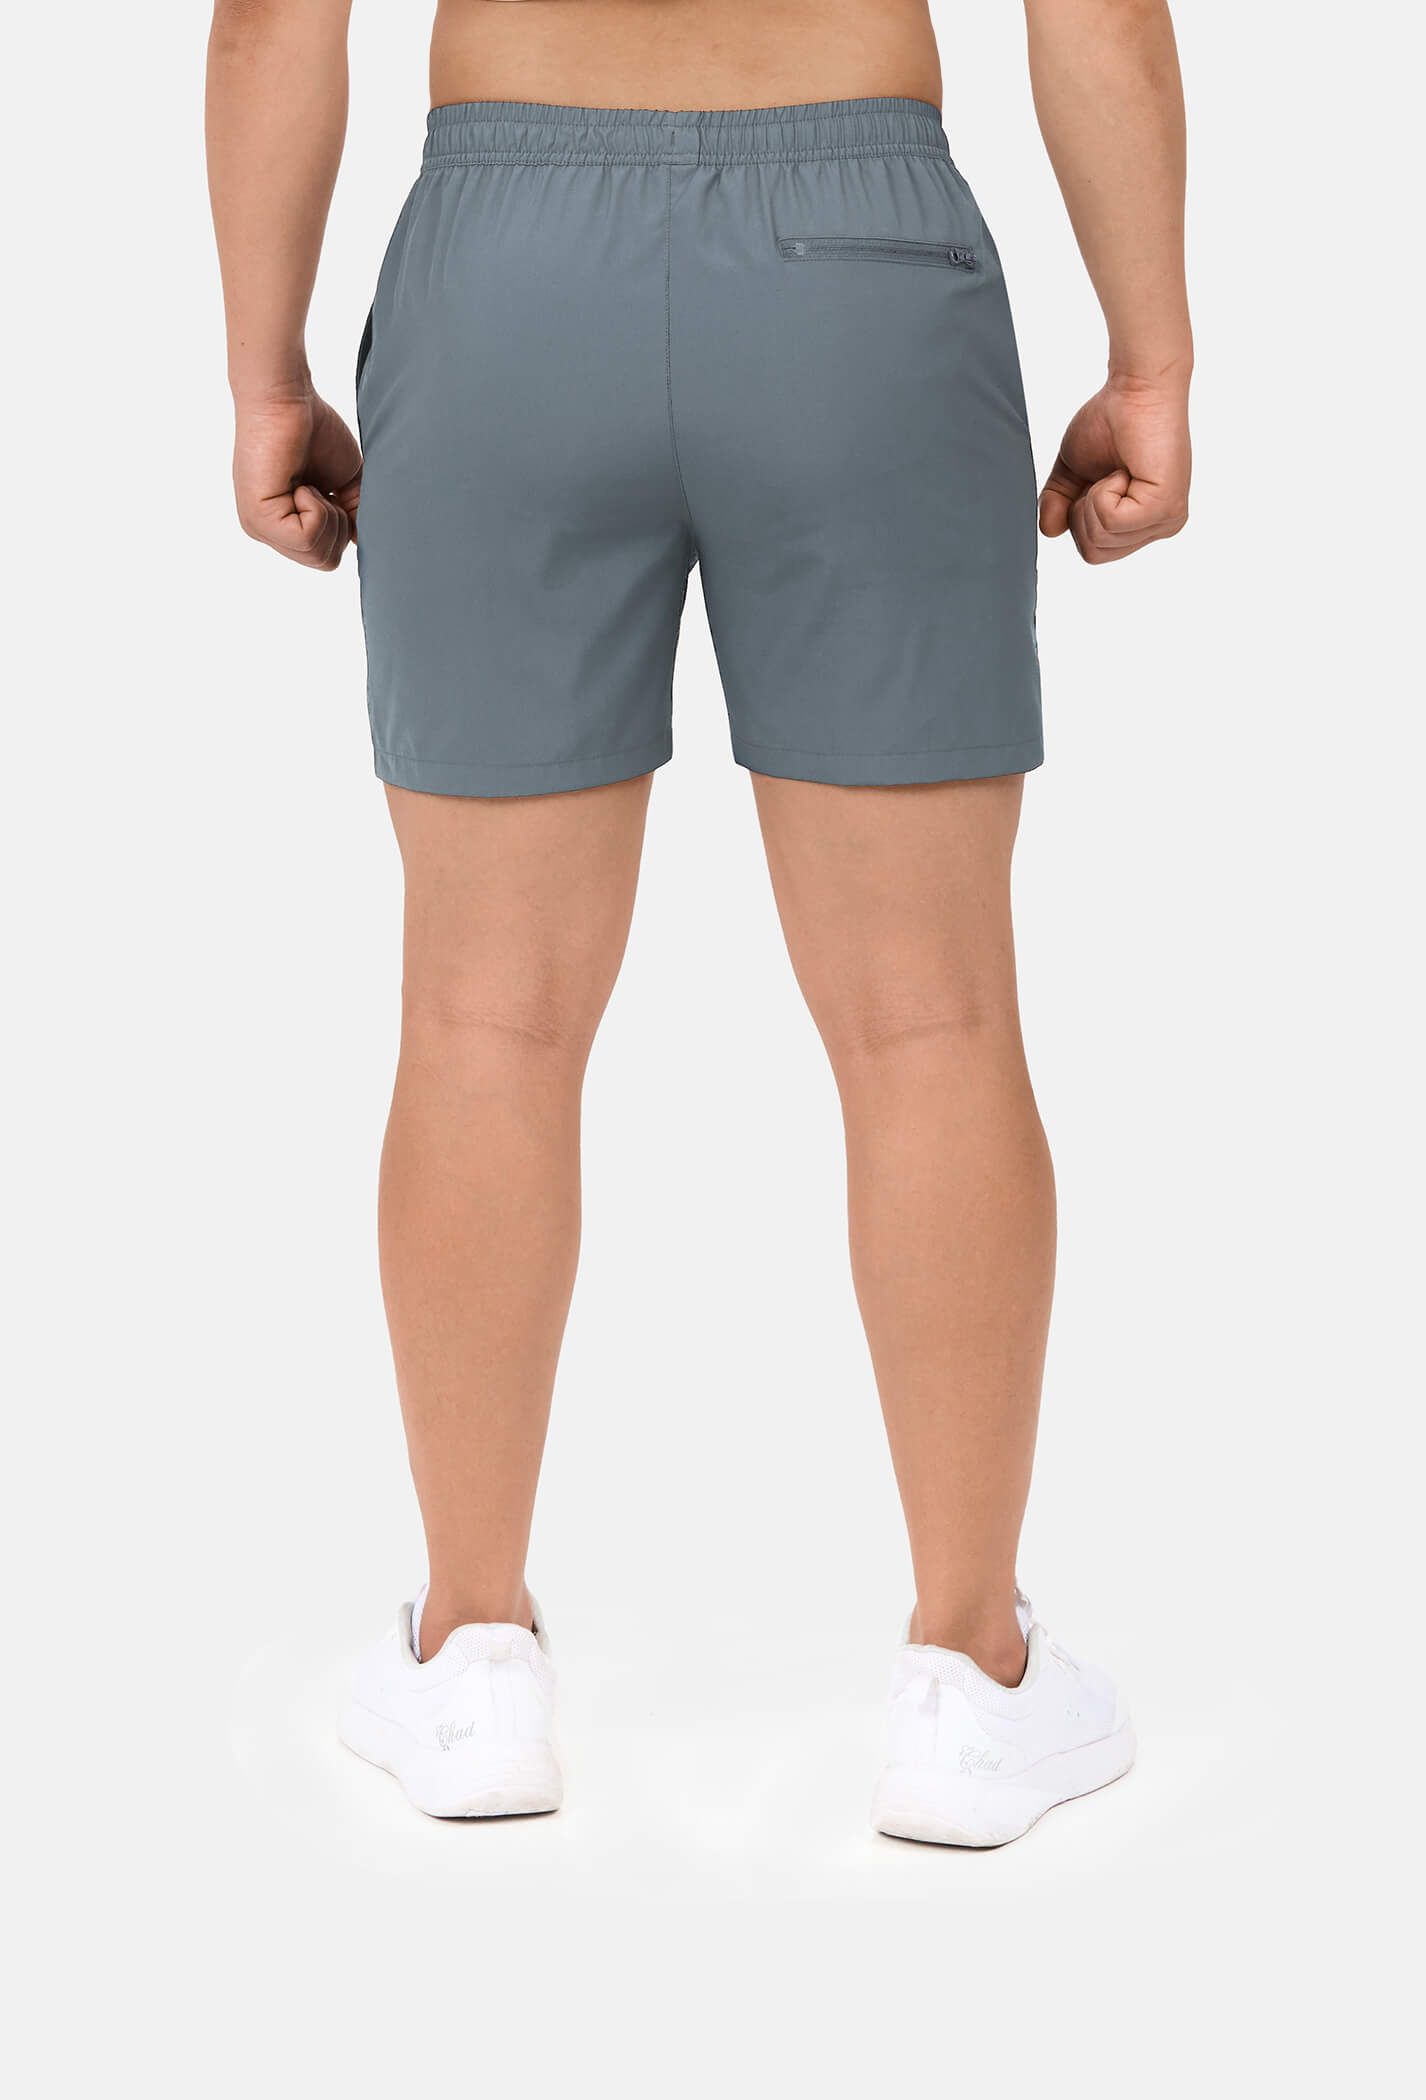 Quần shorts nam thể thao 5" xẻ gấu cao (túi sau có khóa kéo) xam-xanh 3